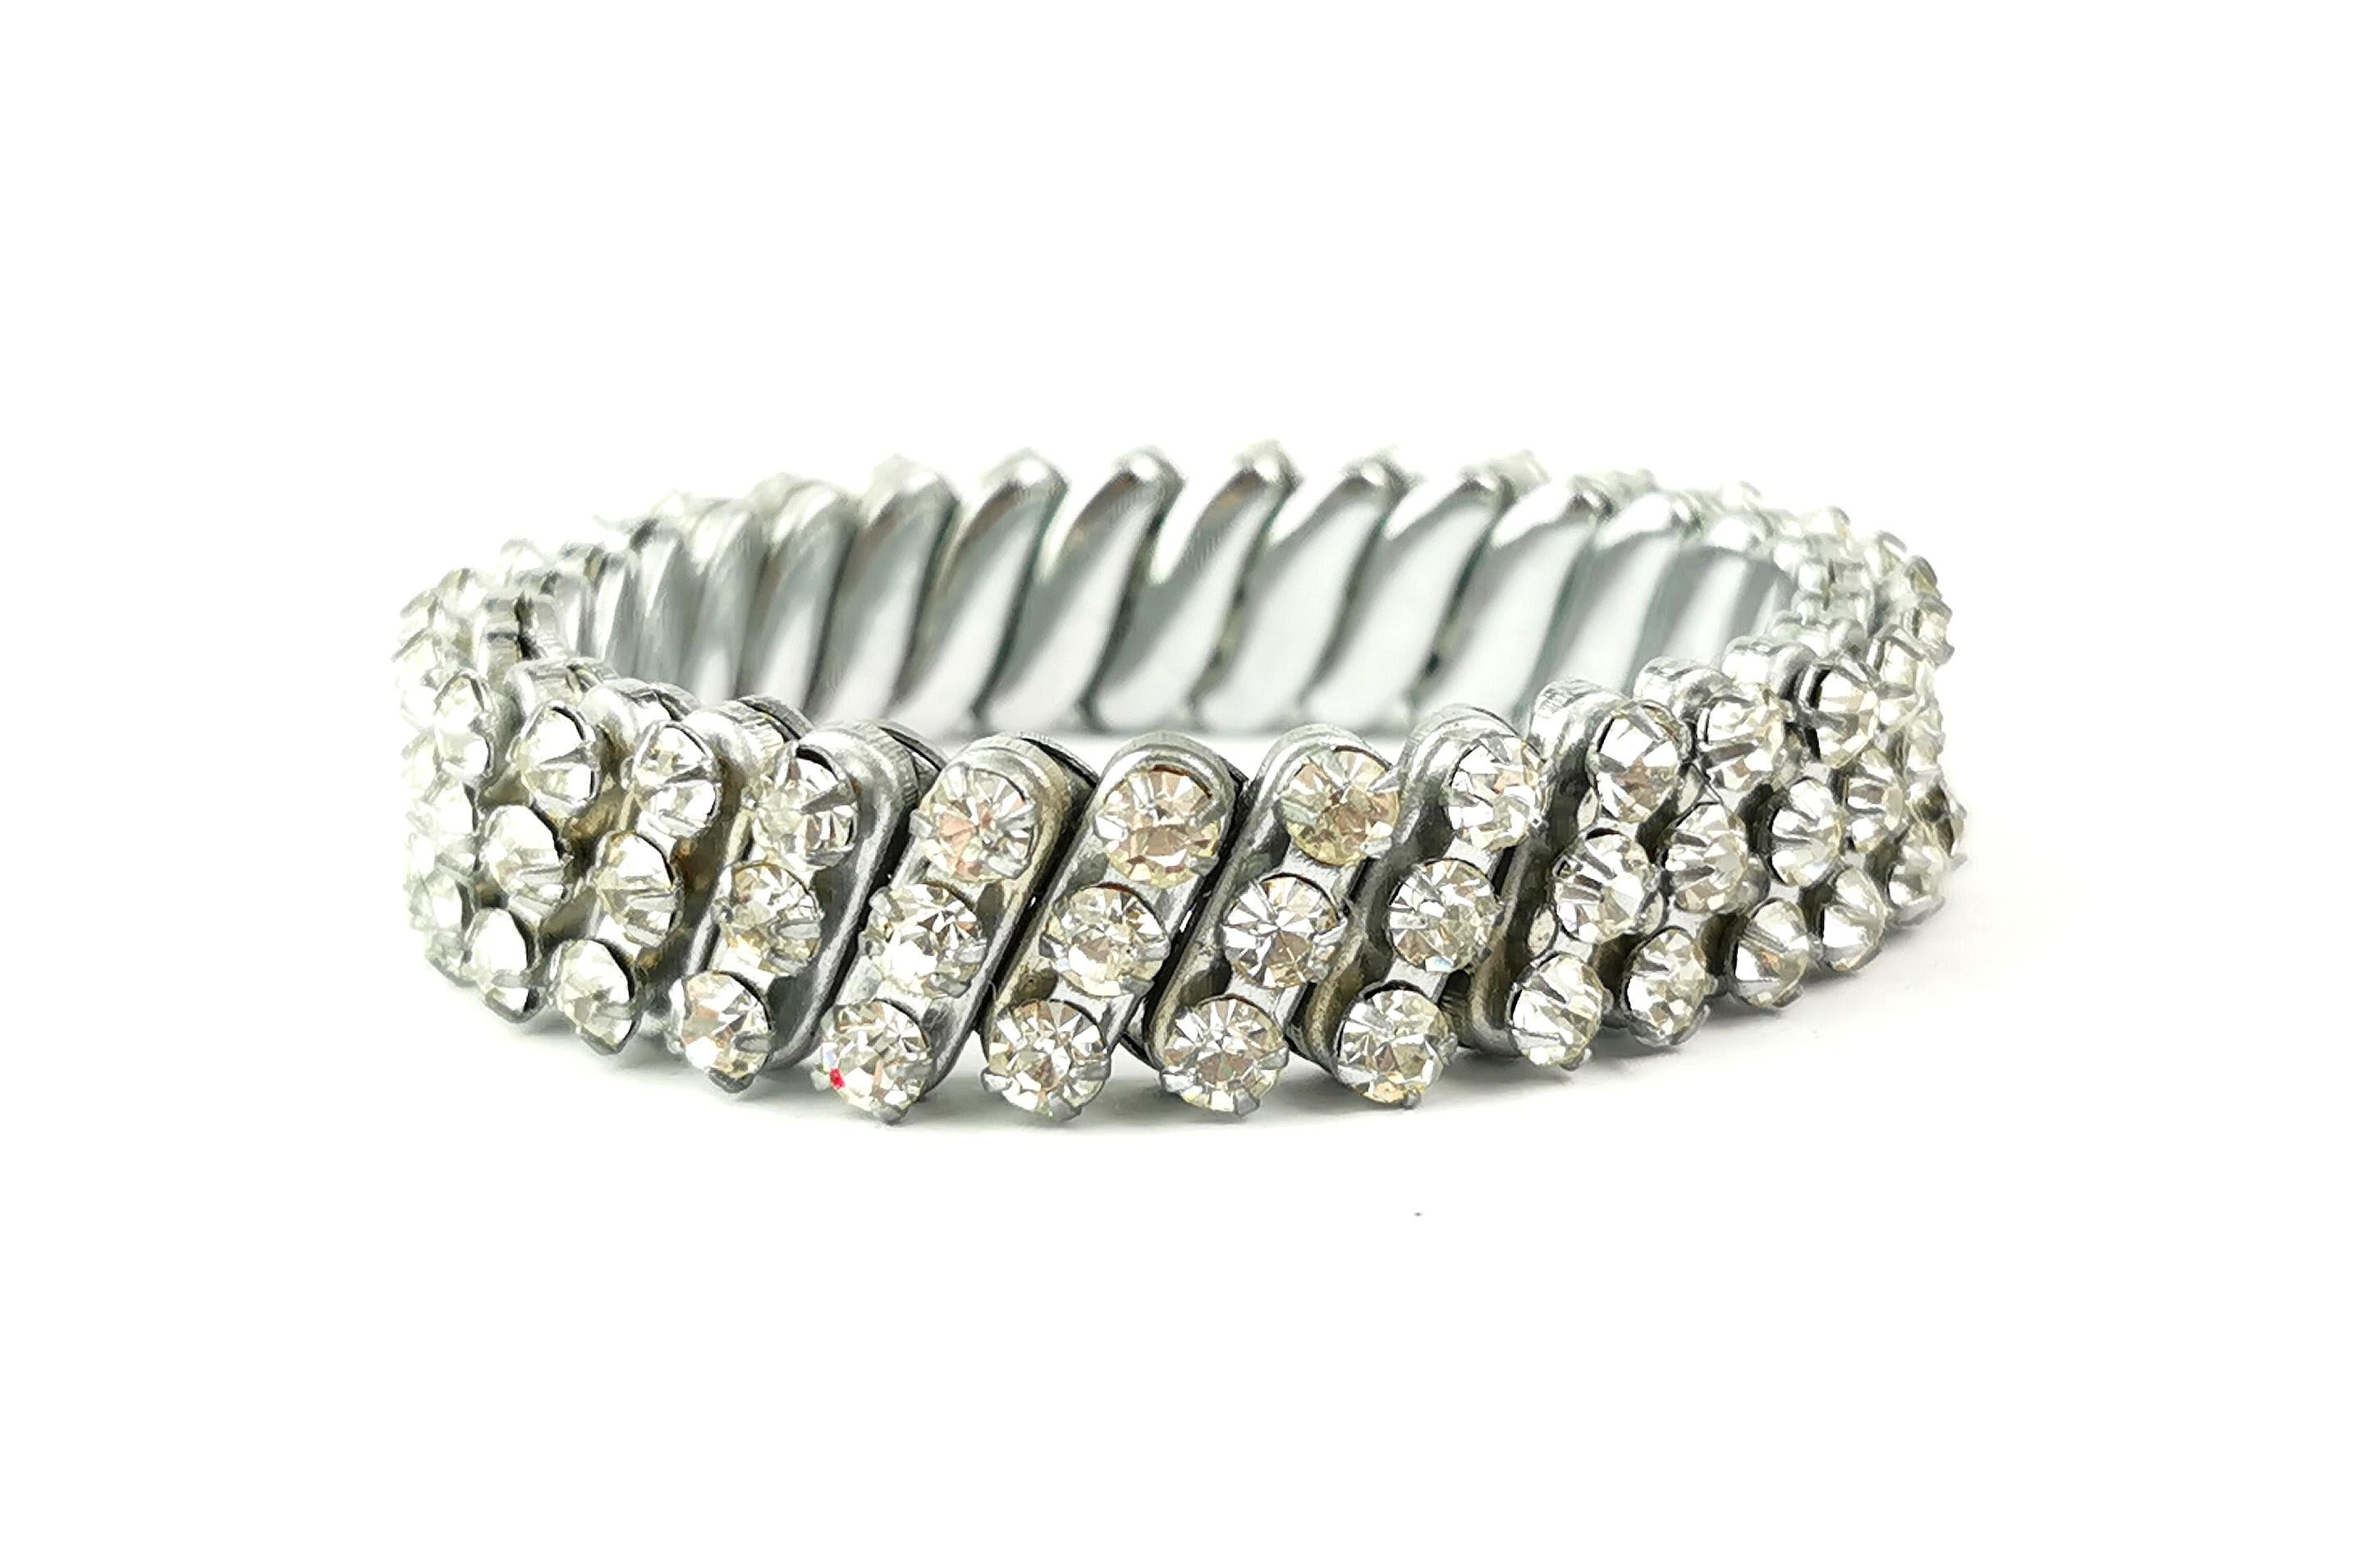 Ein wunderschönes Diamantenarmband aus der Mitte des 20. Jahrhunderts.

Es handelt sich um ein dehnbares Armband aus versilbertem Metall mit dehnbaren Gliedern und schönen klaren, funkelnden Diamanten.

Das perfekte Stück, um jedem Outfit einen